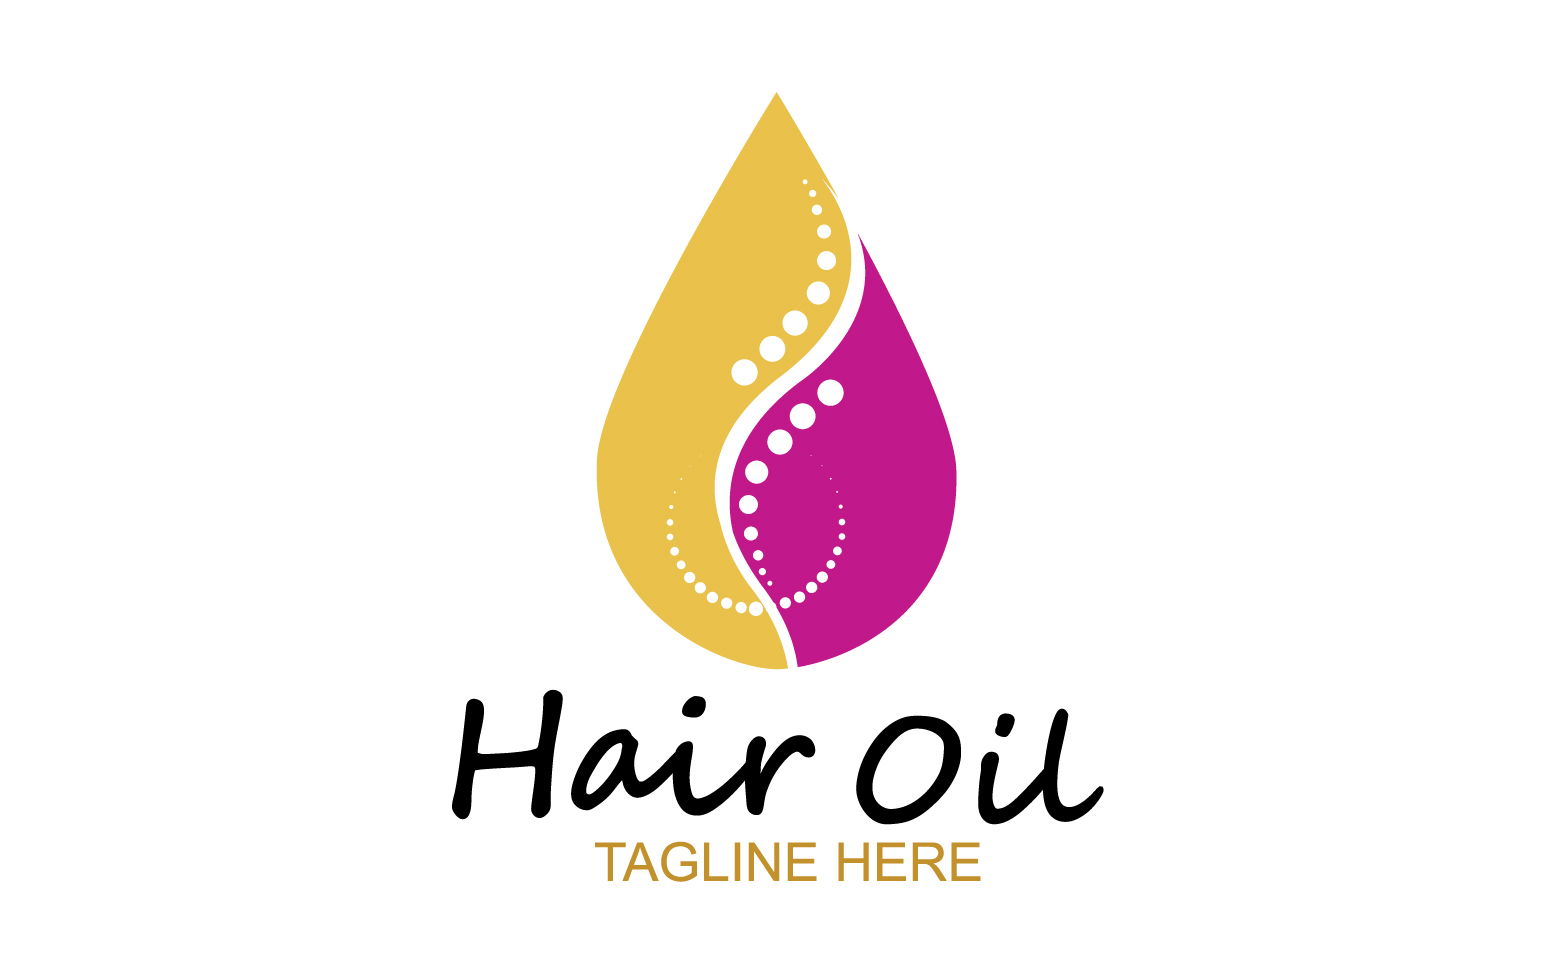 Hair oil health logo vector template v38